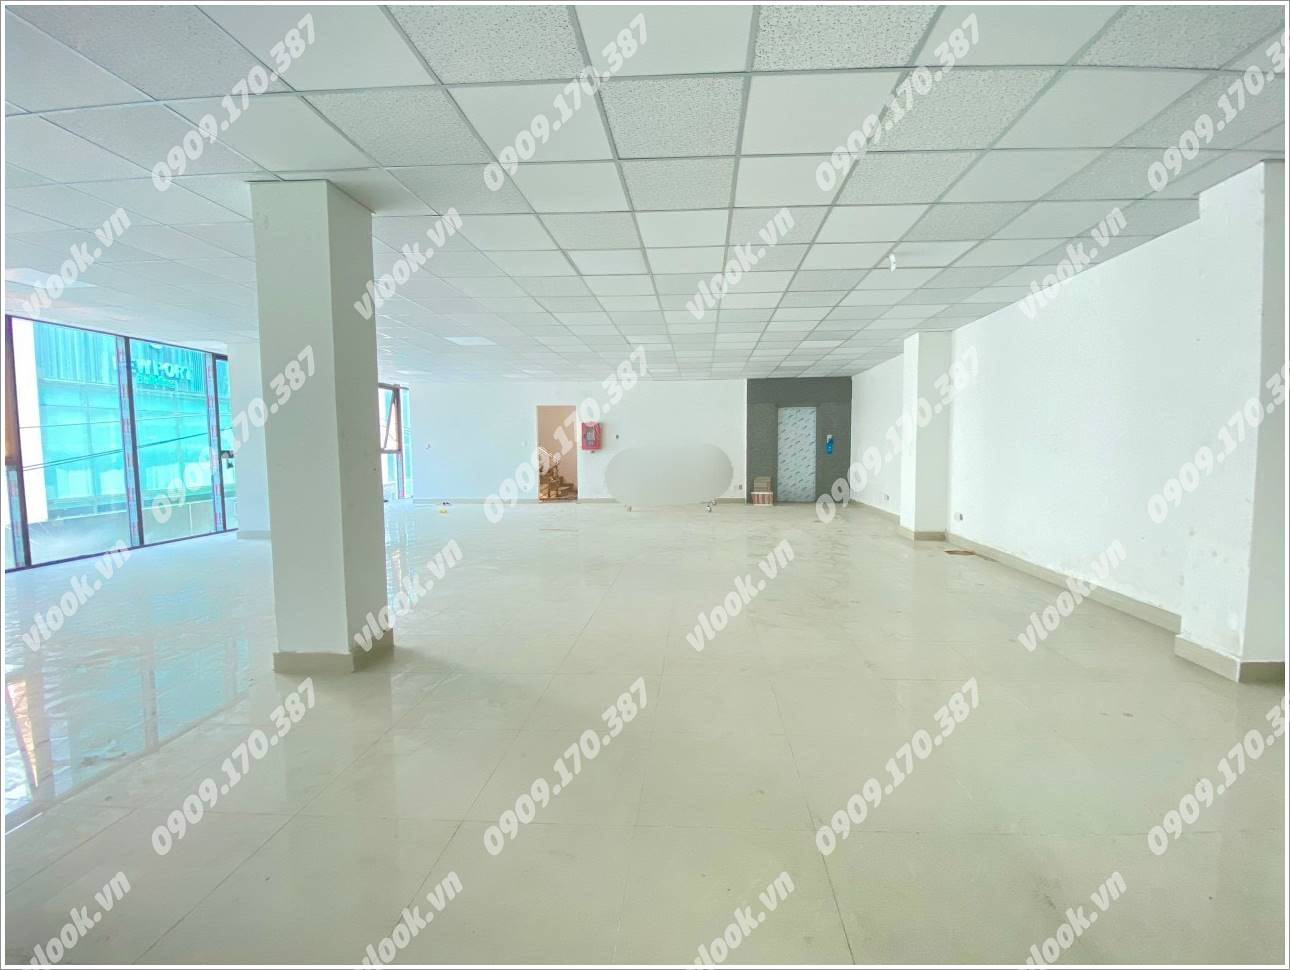 Cao ốc văn phòng cho thuê tòa nhà PLS Building Điện Biên Phủ, Quân Bình Thạnh, TP.HCM - vlook.vn